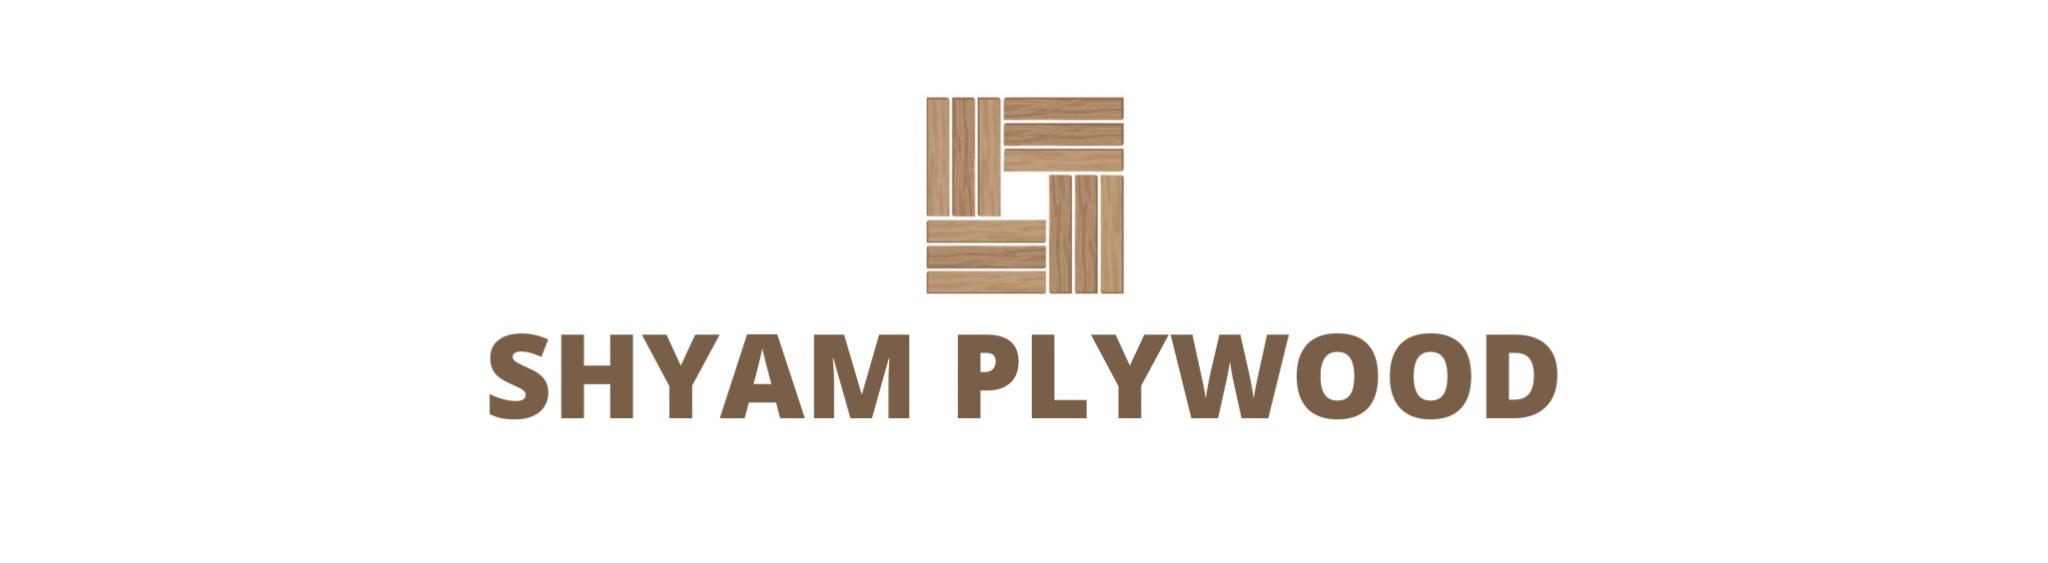 Shyam Plywood Industries